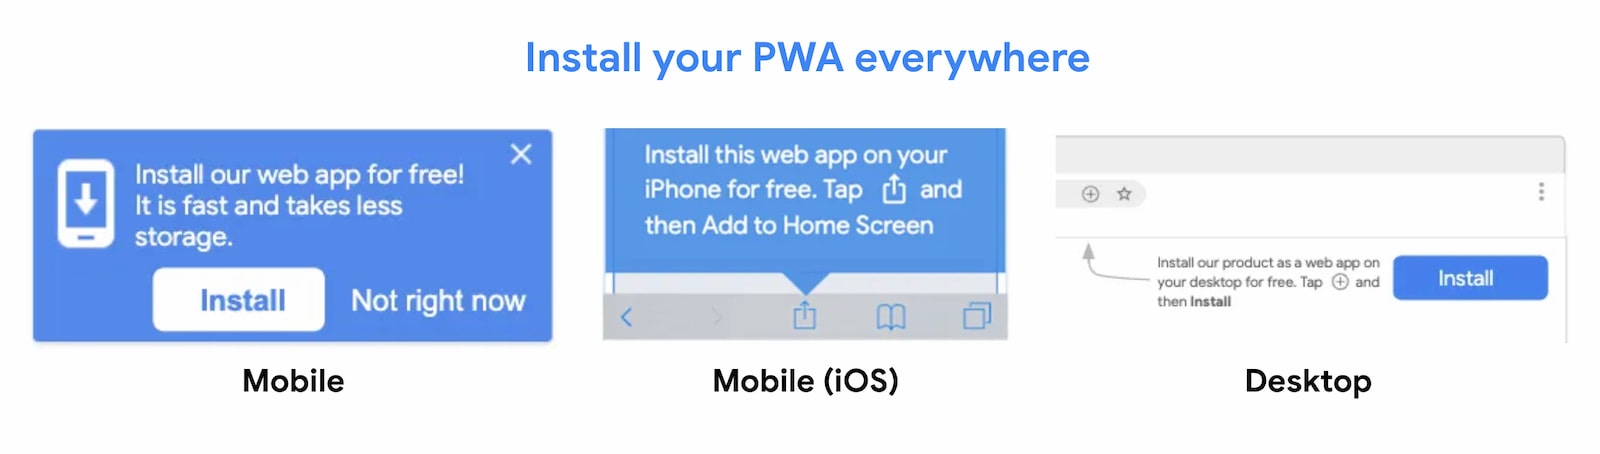 Le PWA sono installabili ovunque.